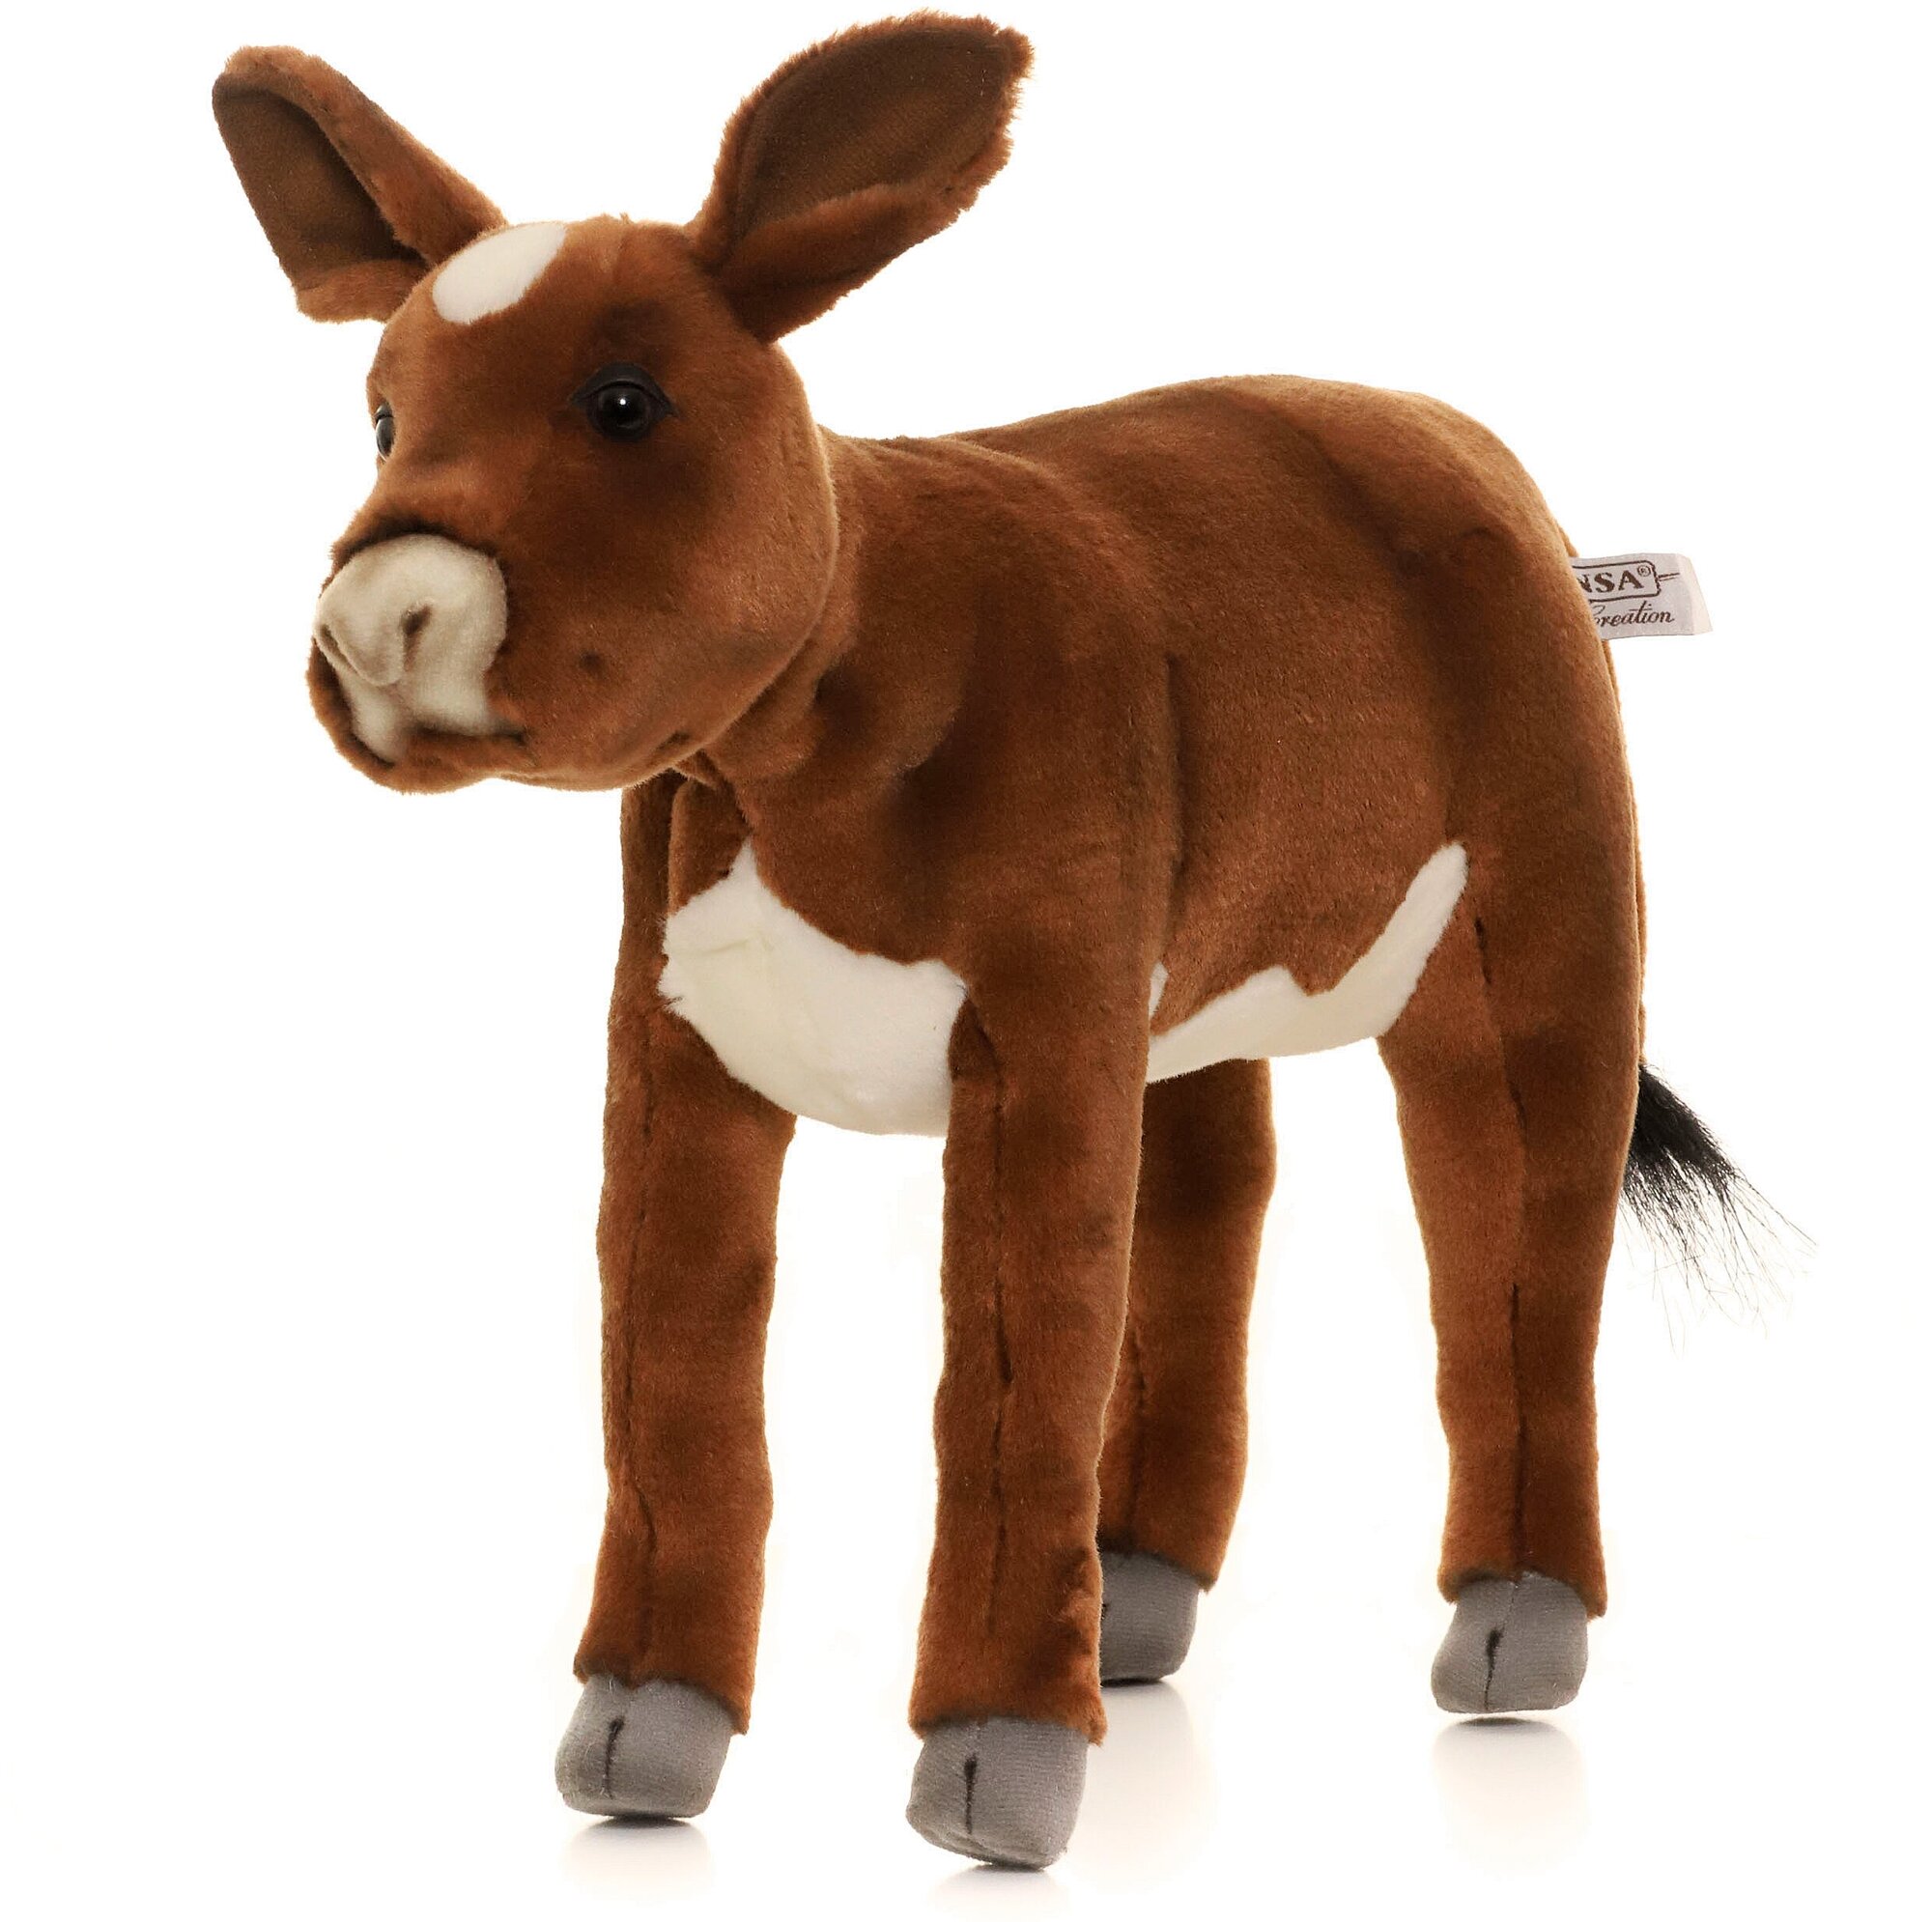 Реалистичная мягкая игрушка Hansa Creation, 3456 Бык, телёнок, коричневый, 34 см